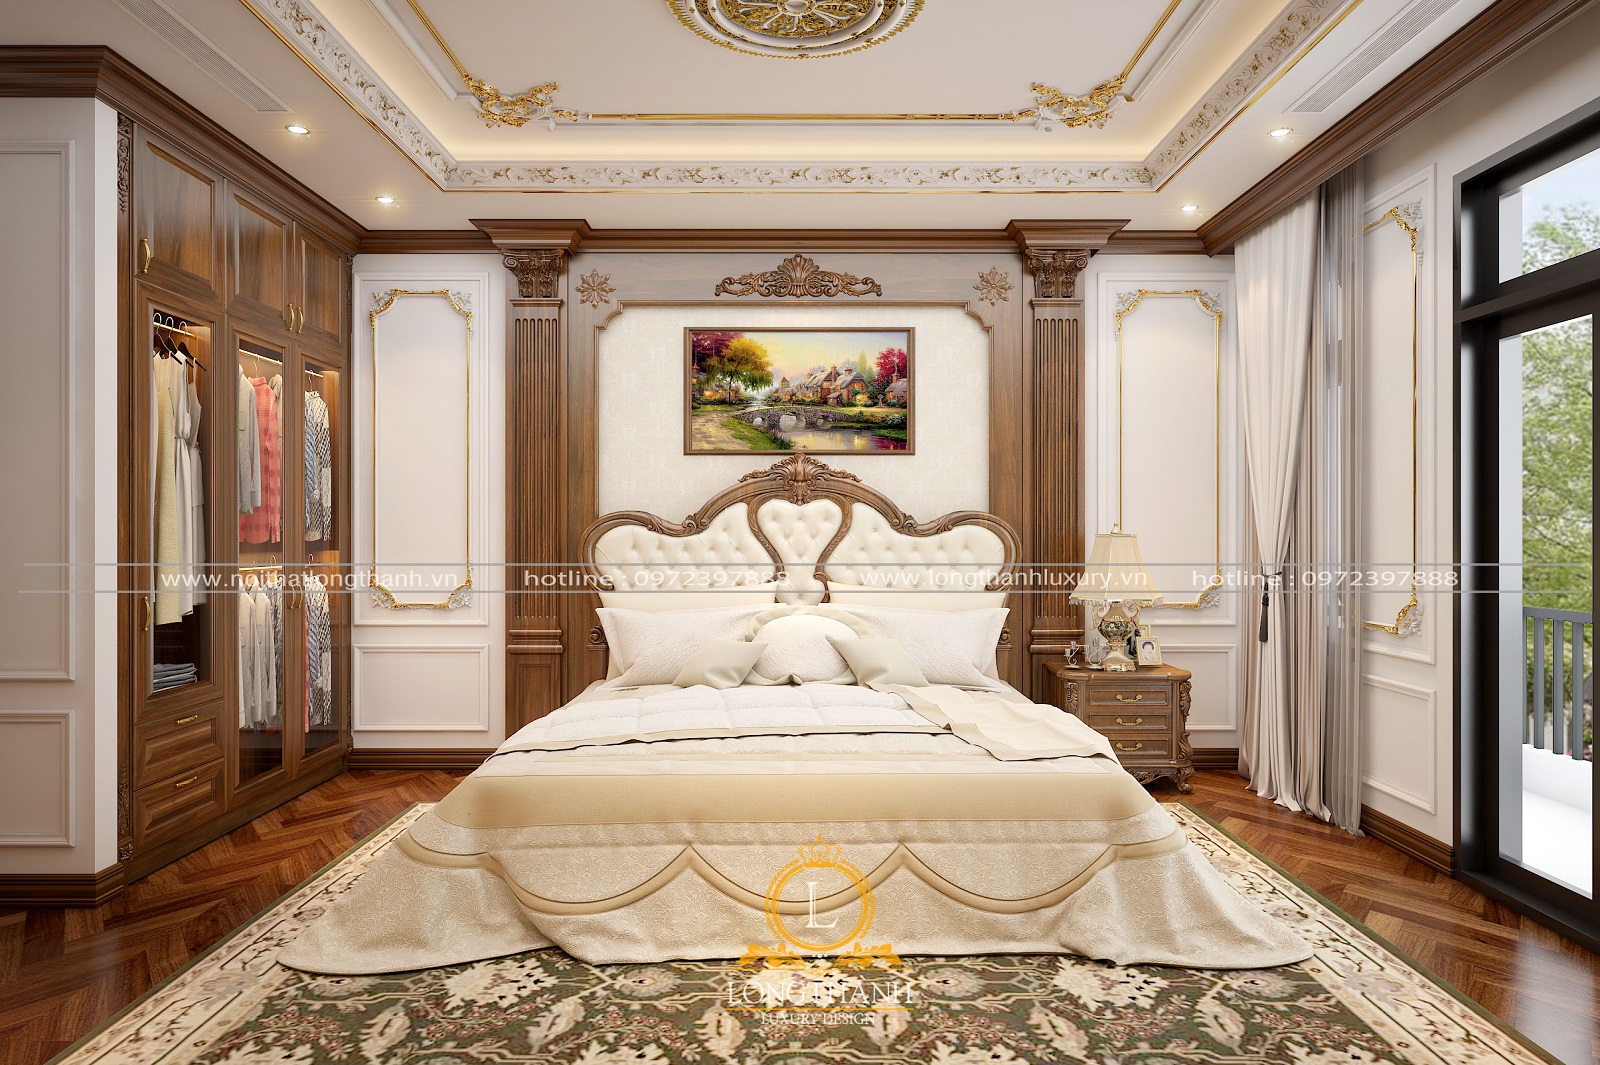 Mẫu nội thất phòng ngủ phong cách tân cổ điển đẹp nhẹ nhàng và tinh tế